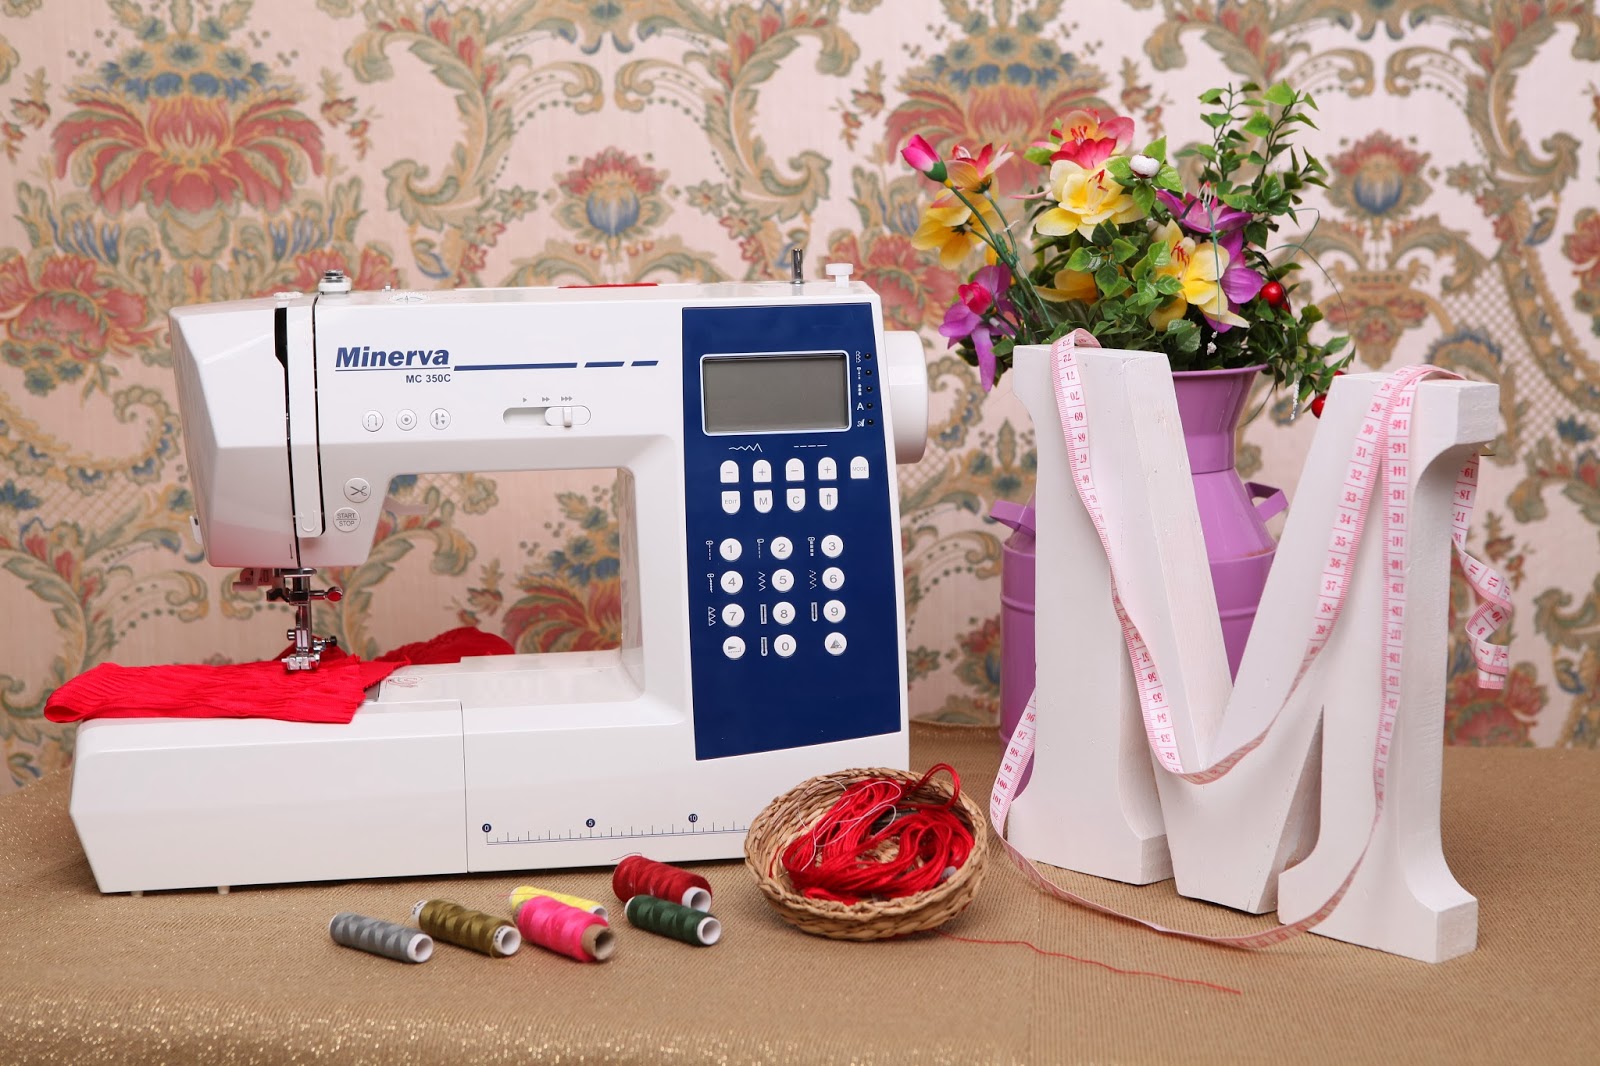 Типы швейных машин | какую швейную машинку выбрать для дома